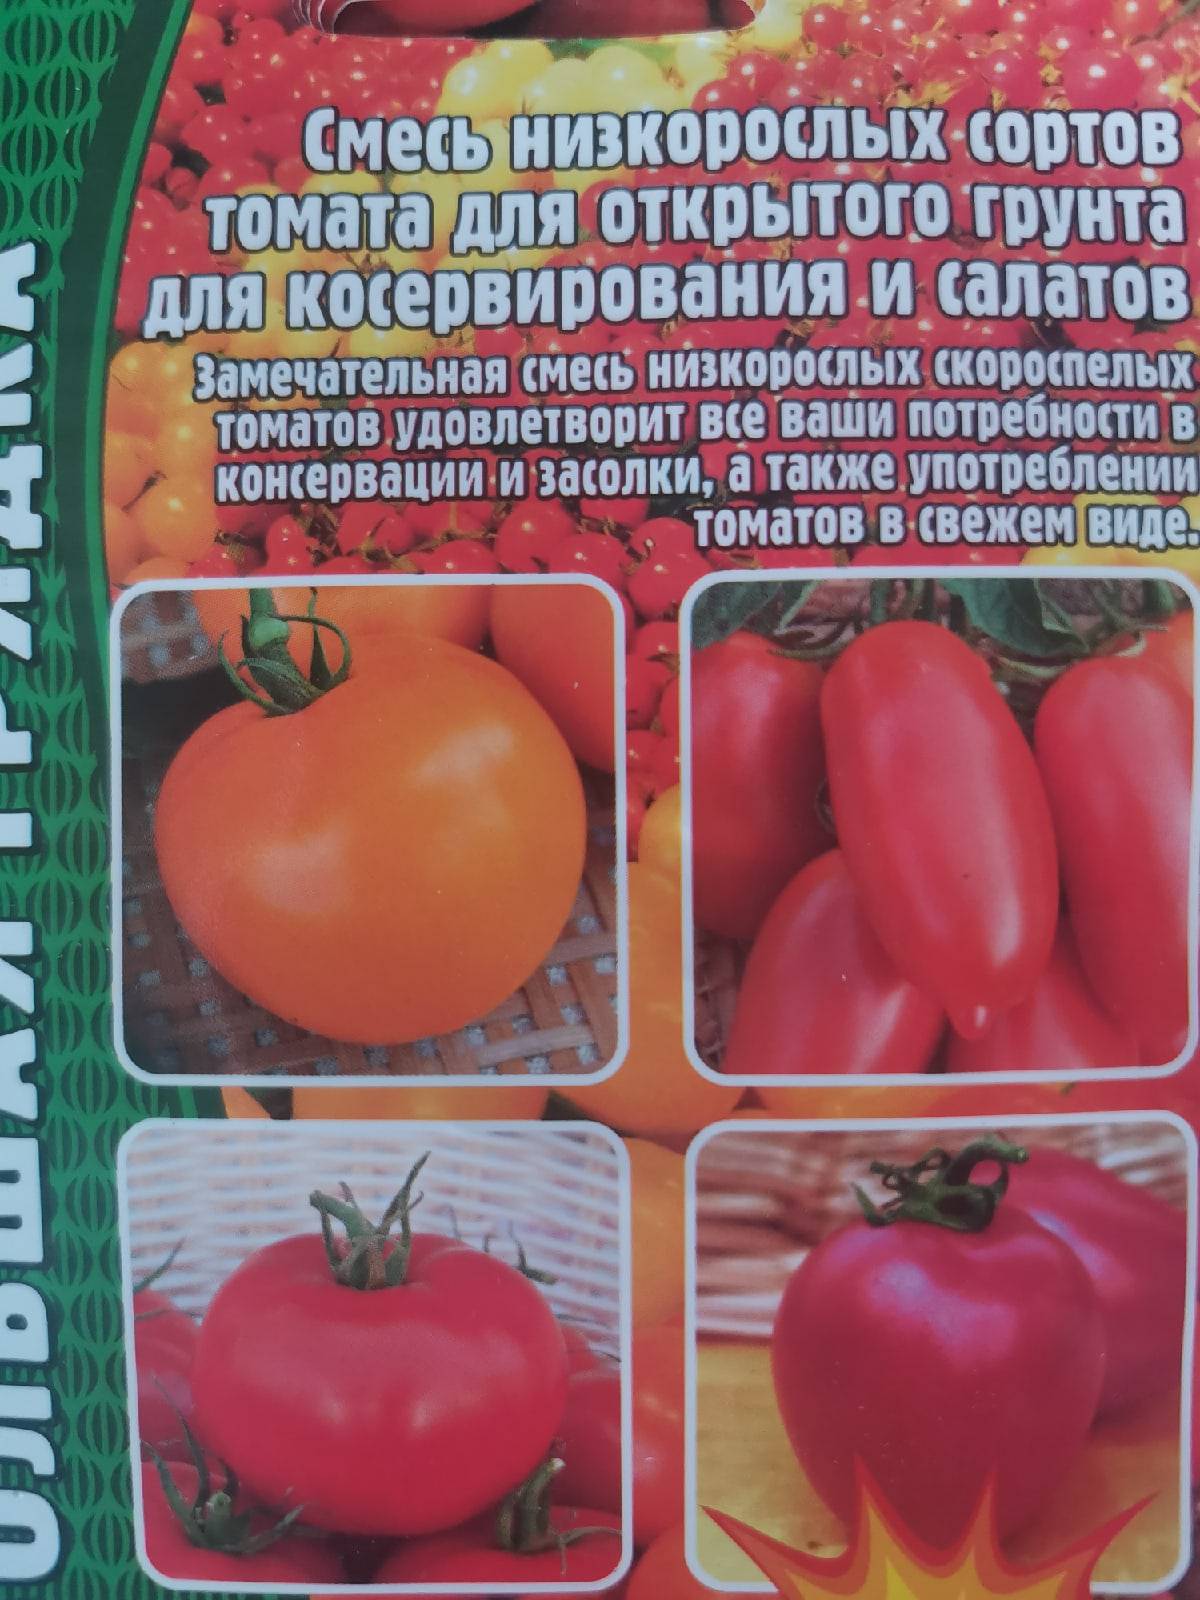 Обзор популярных сортов помидоров для теплиц: фото и характеристики